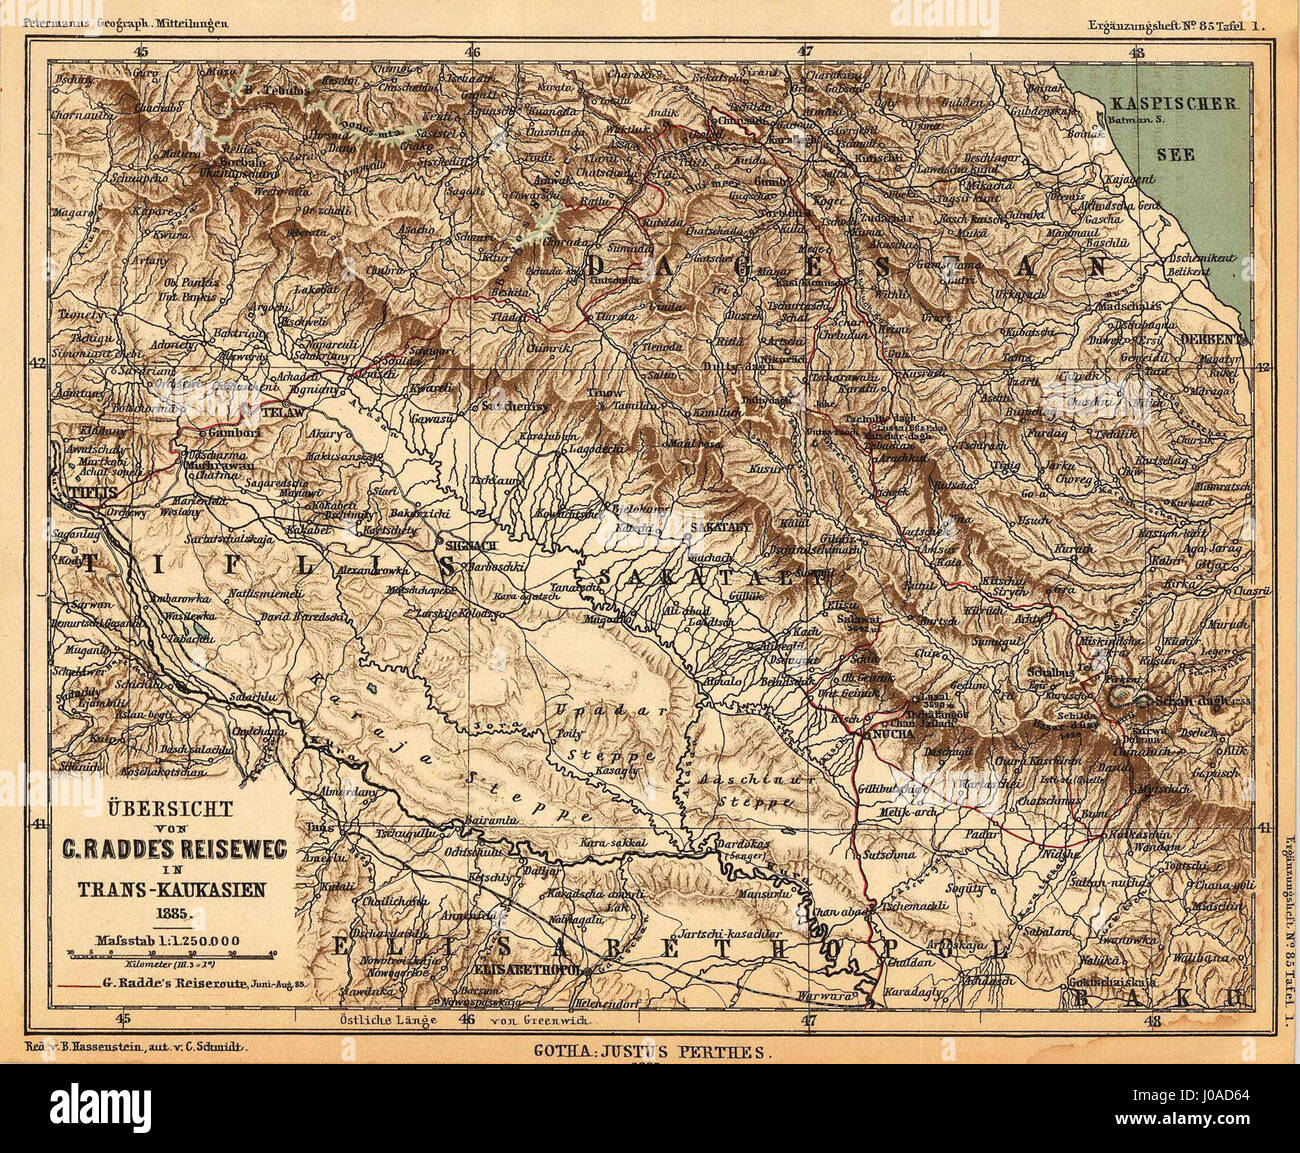 Übersicht von C. Raddes Reiseweg in Trans-Kaukasien 1885 Stock Photo